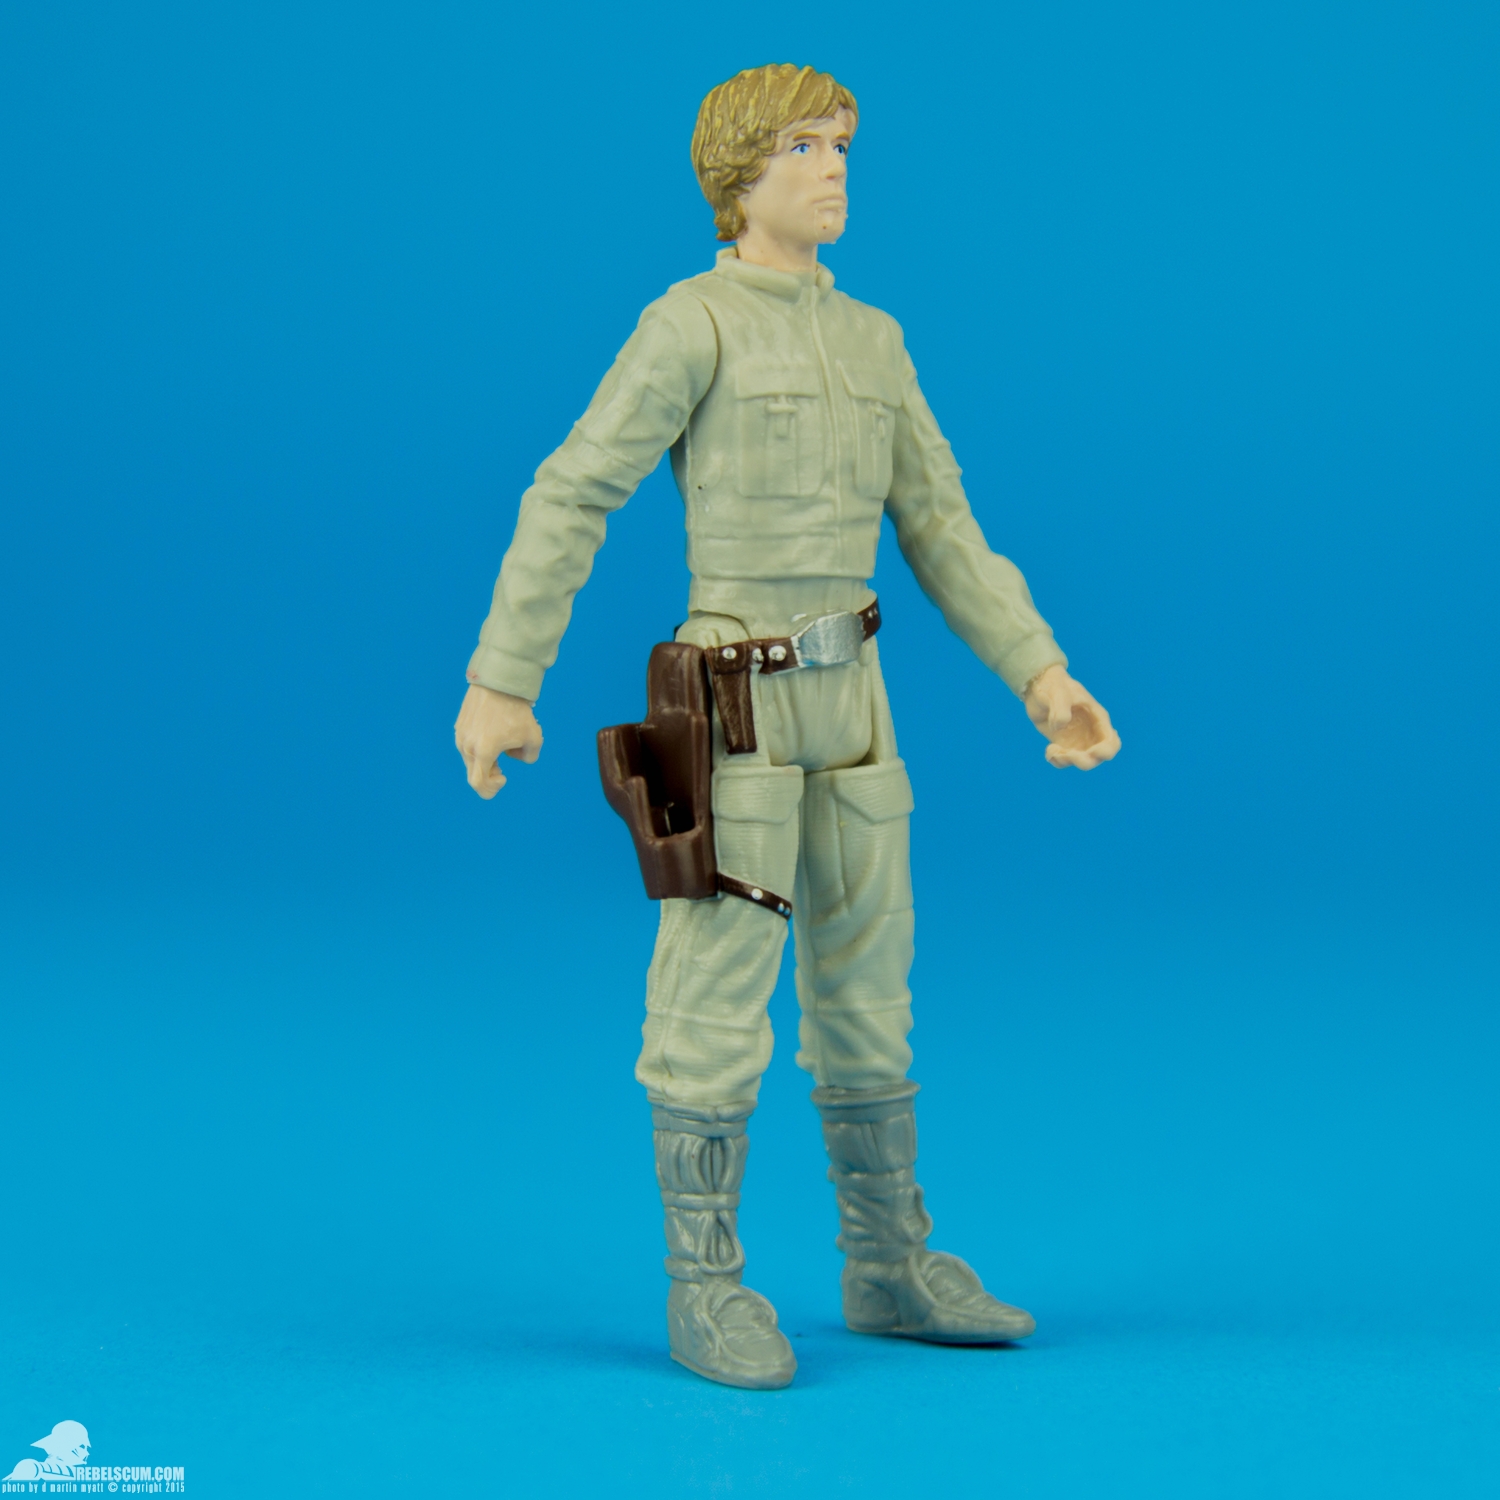 Luke-Skywalker-Star-Wars-The-Force-Awakens-Hasbro-002.jpg